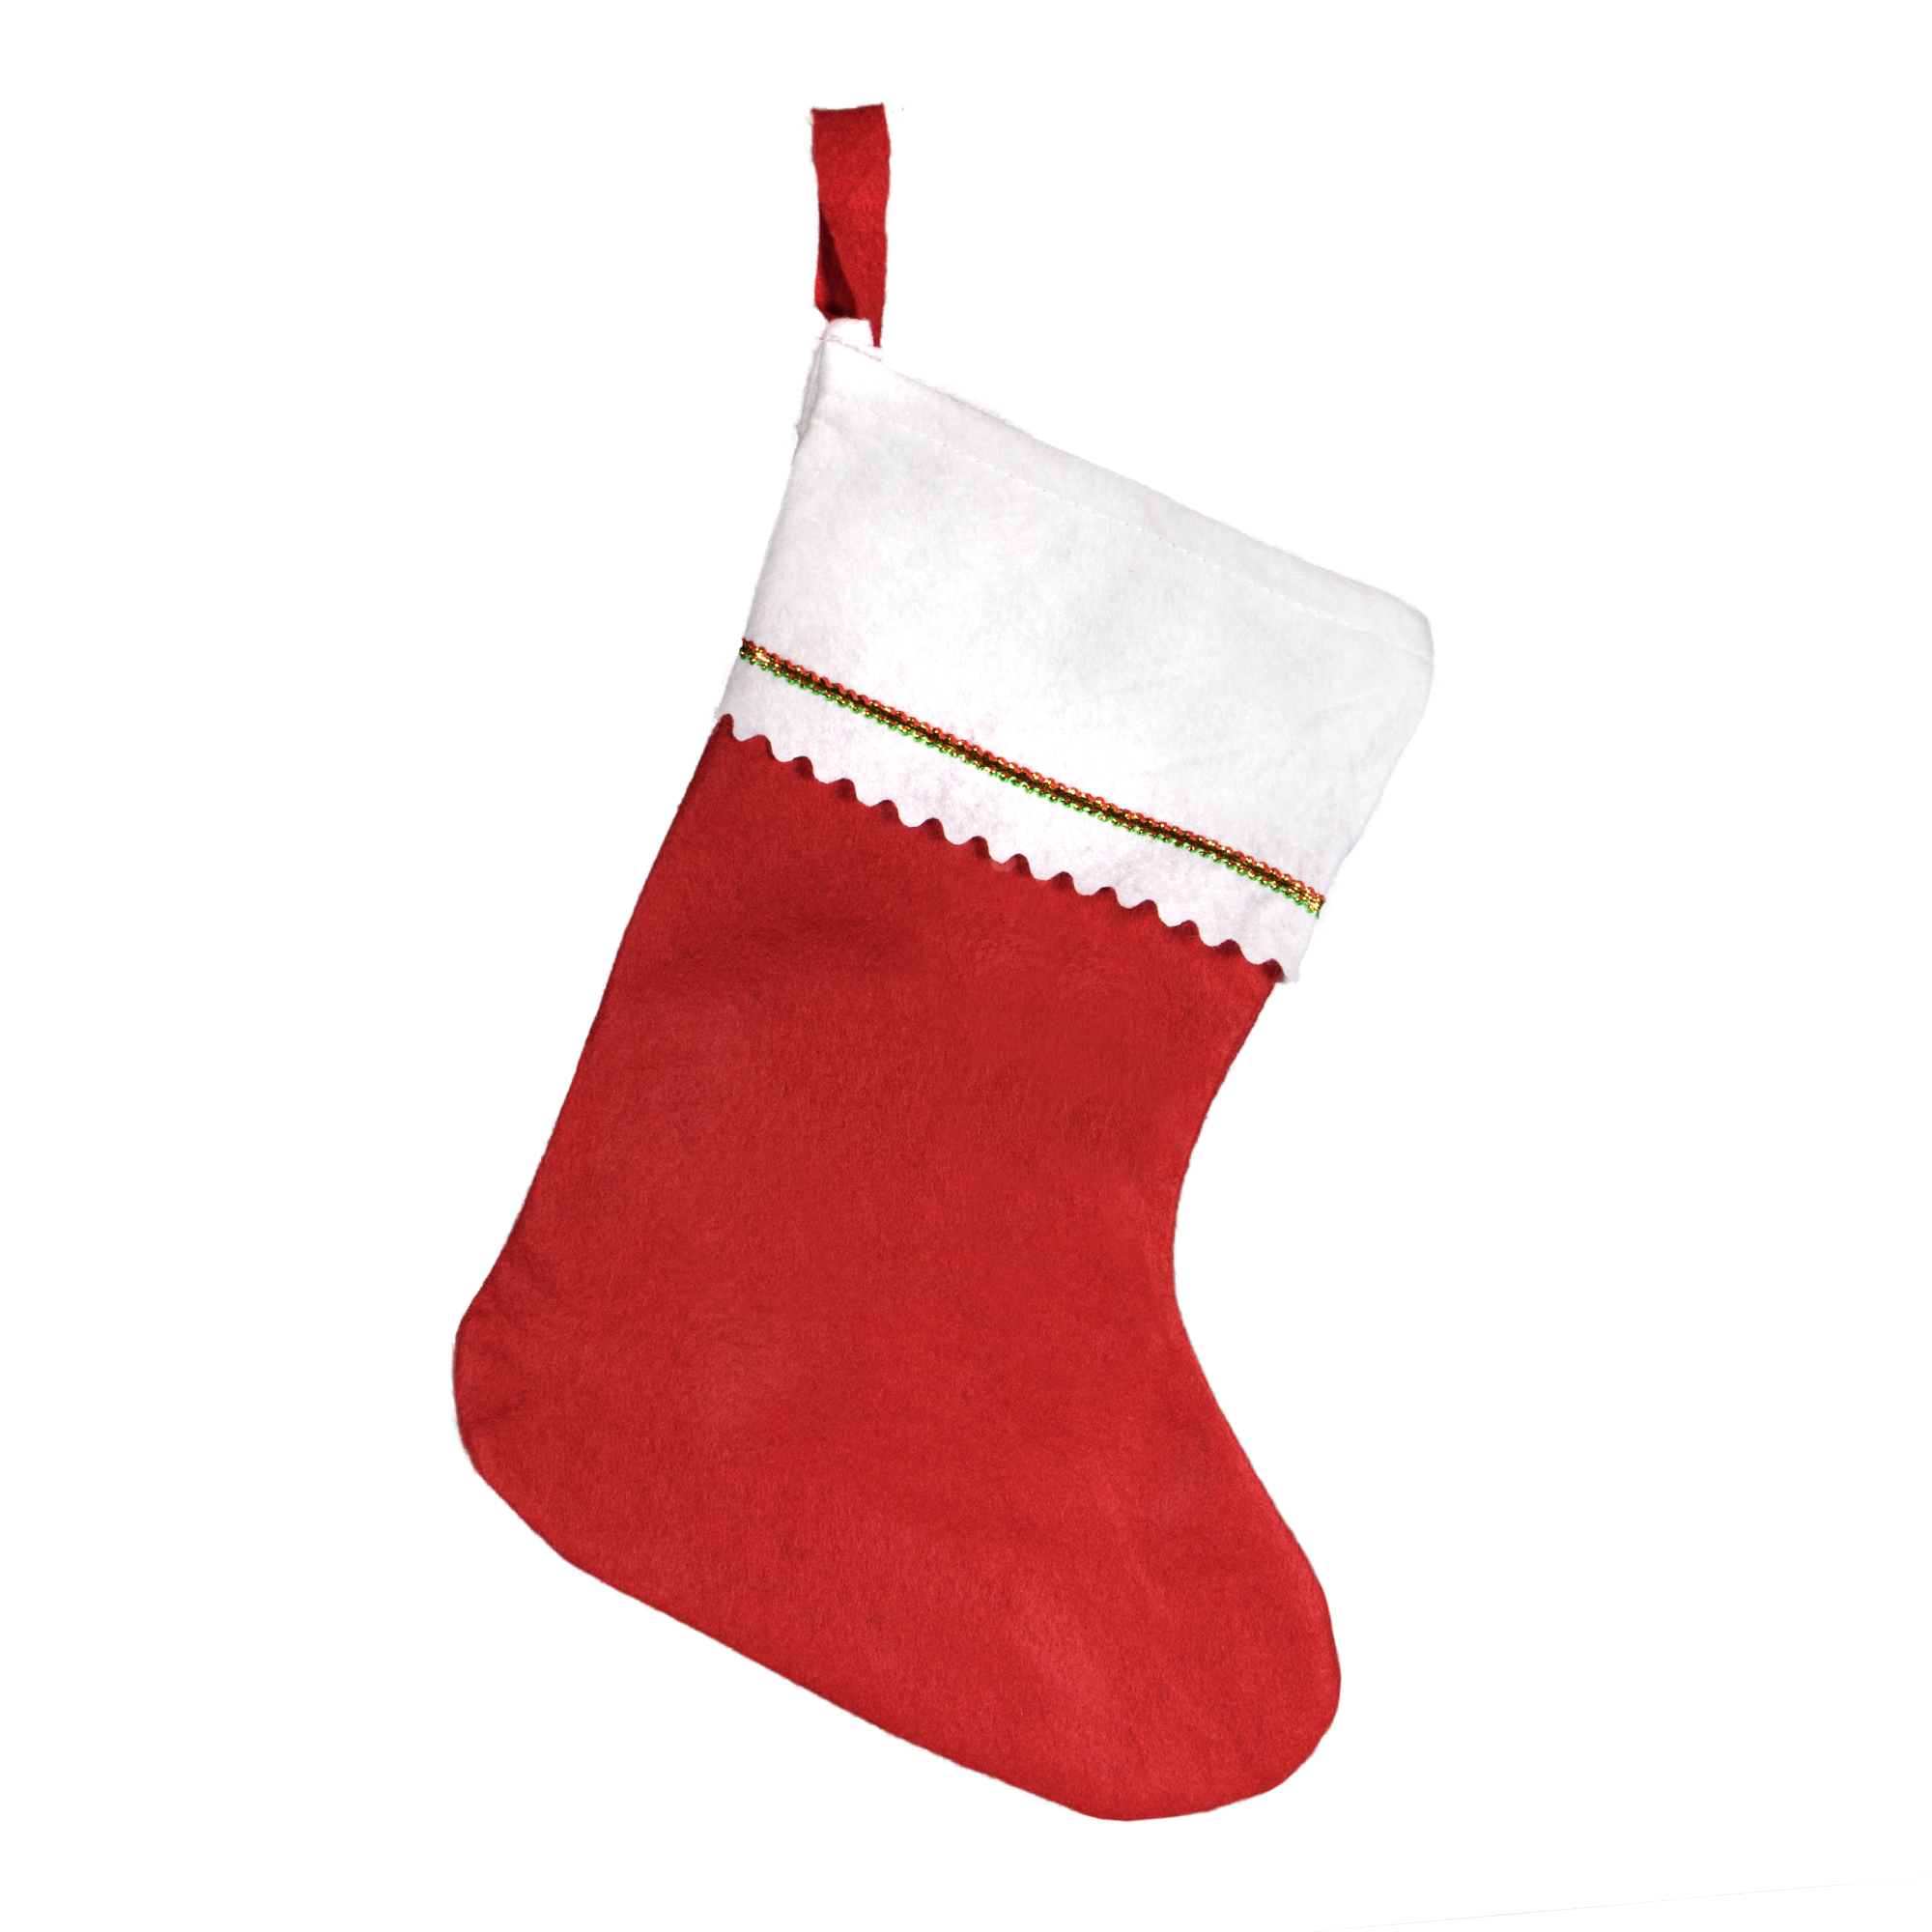 Red Felt Christmas Stockings - 12 Pack